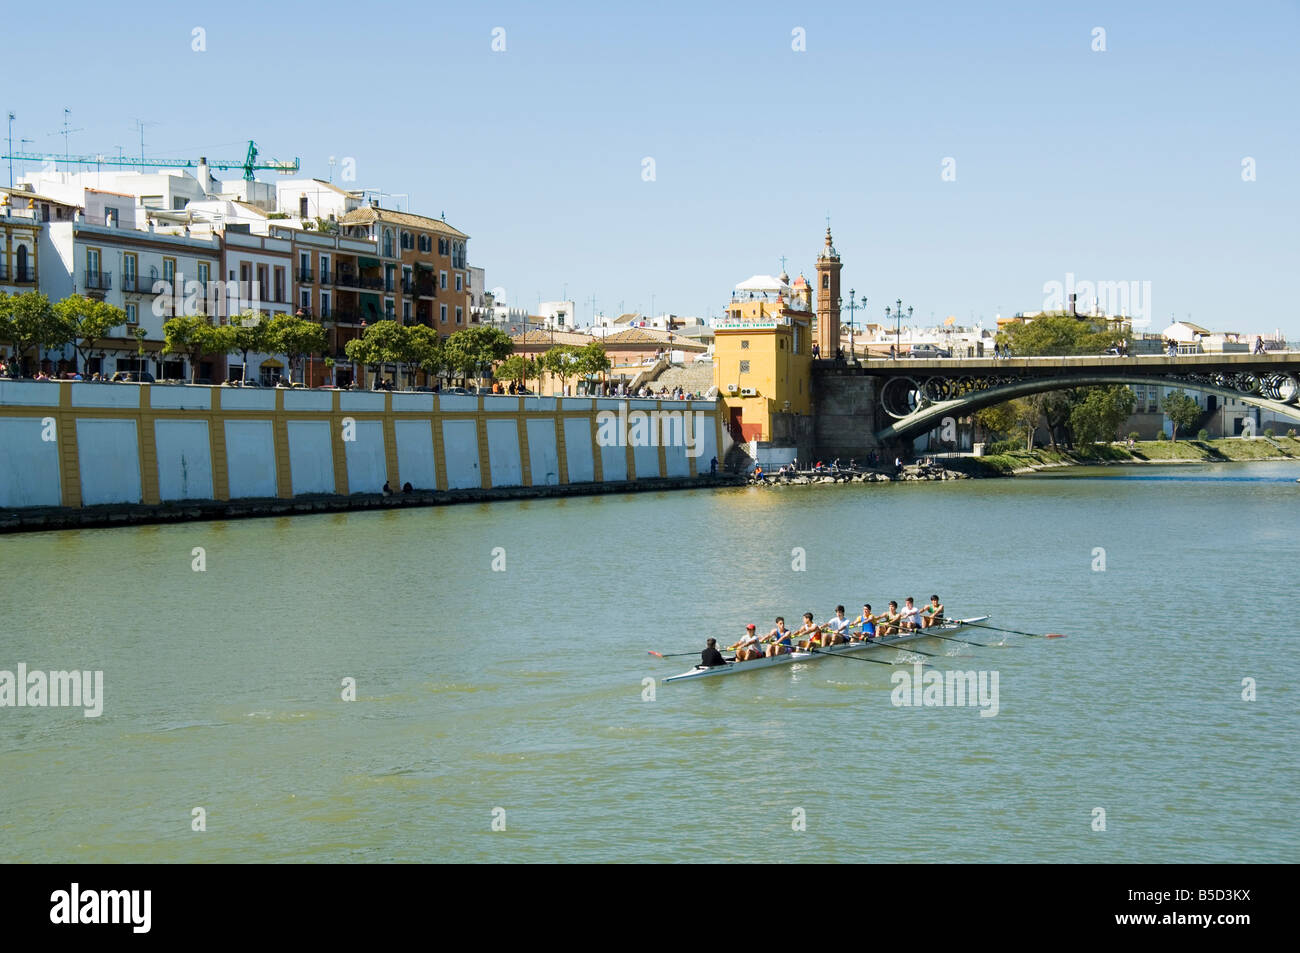 Puente de Isabel II, également connu sous le nom de Puente de Triana, rivière Rio Guadalquivir, Séville, Andalousie, Espagne Banque D'Images